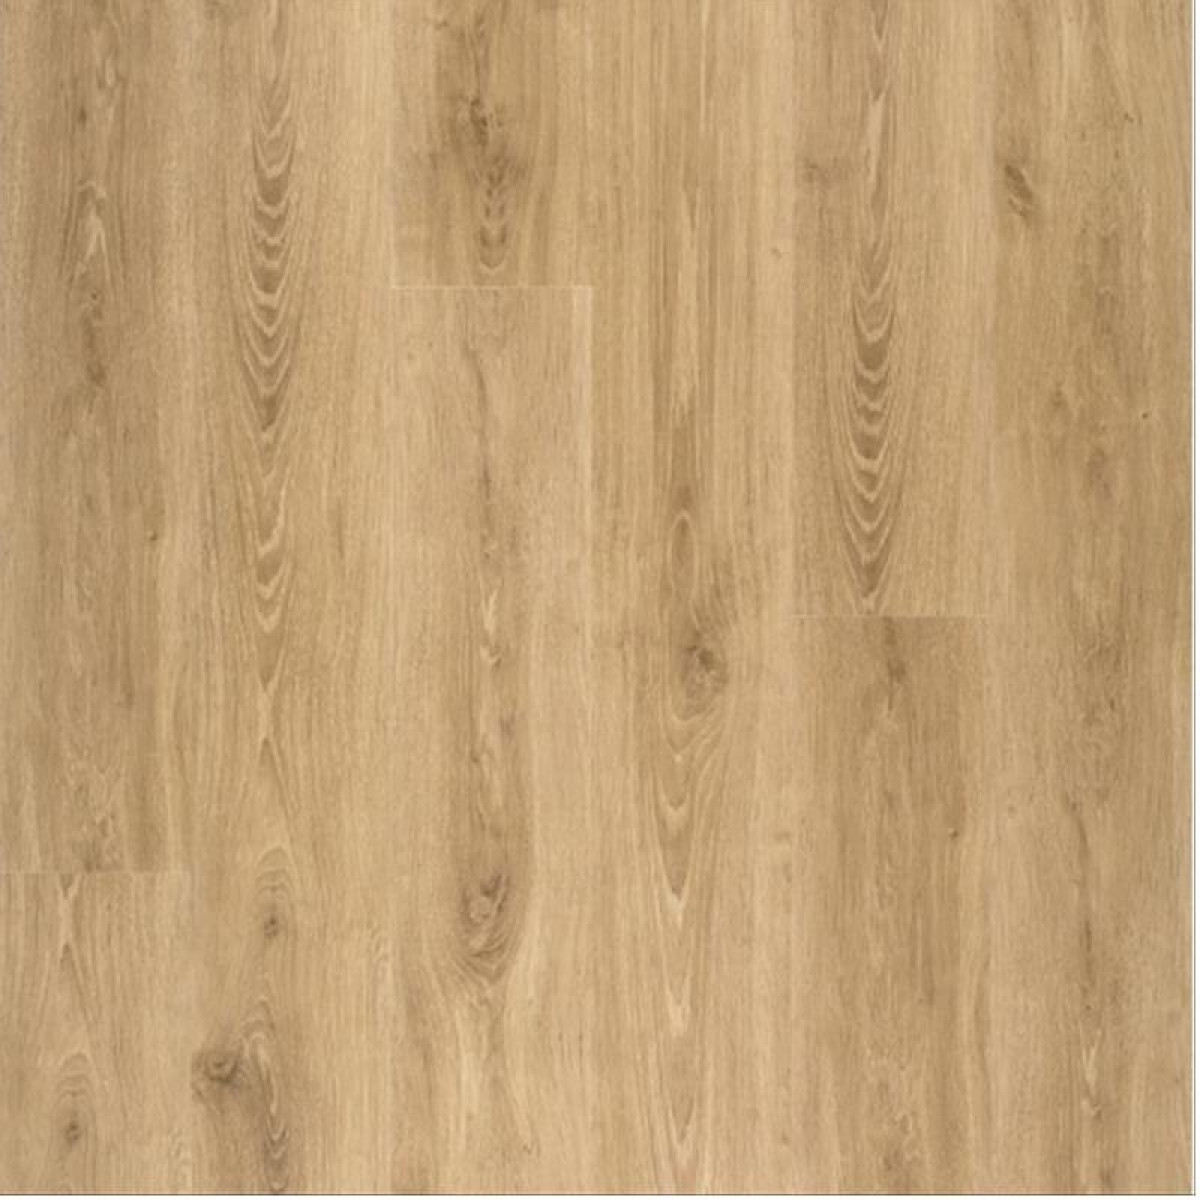 8mm Groove Rustic Oak Laminate Flooring Elka